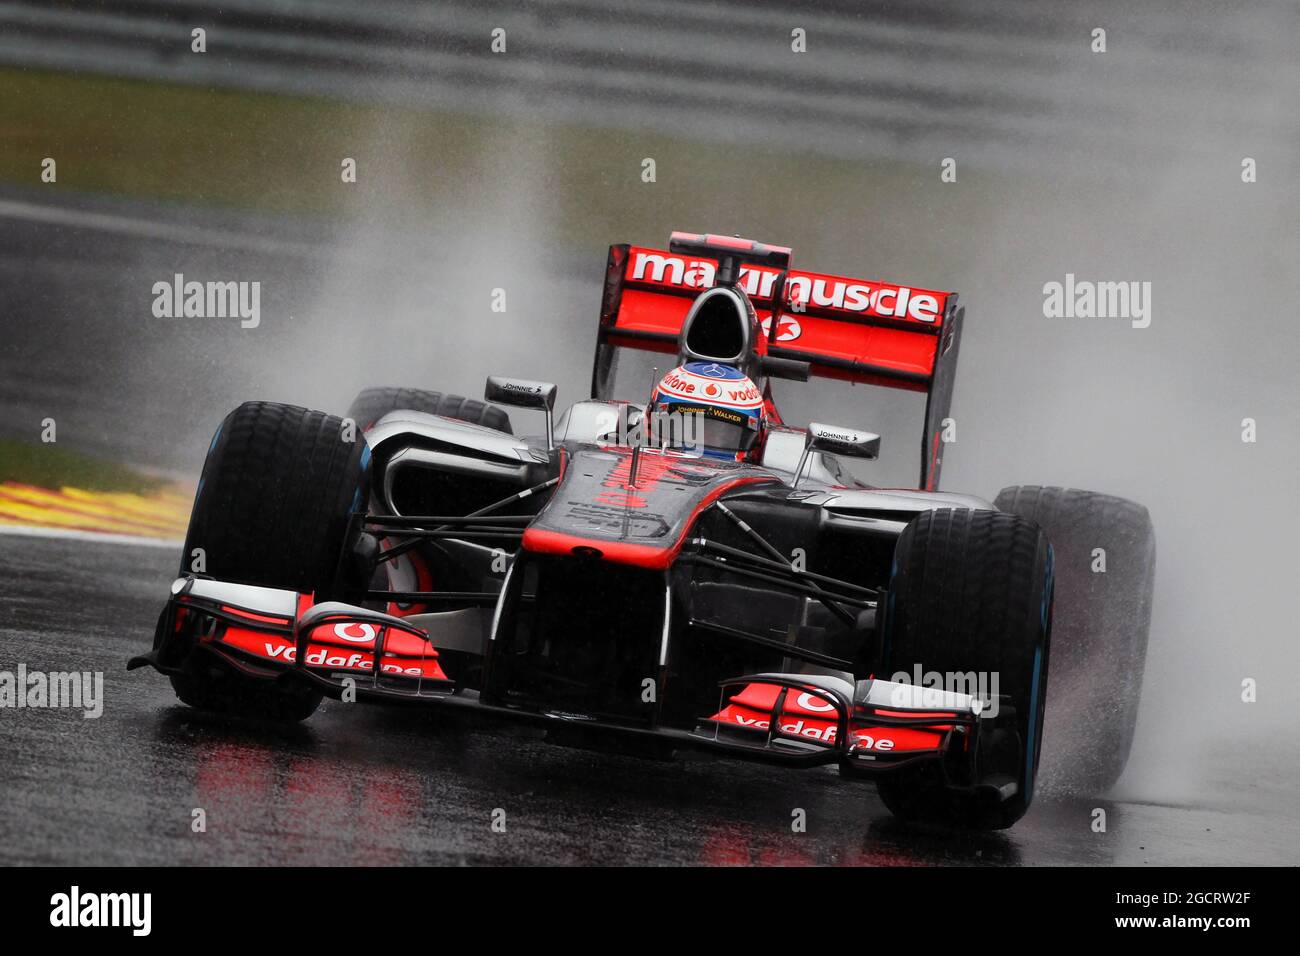 Jenson Button (GBR) McLaren MP4/27. Grand Prix de Belgique, vendredi 31 août 2012. Spa-Francorchamps, Belgique. Banque D'Images